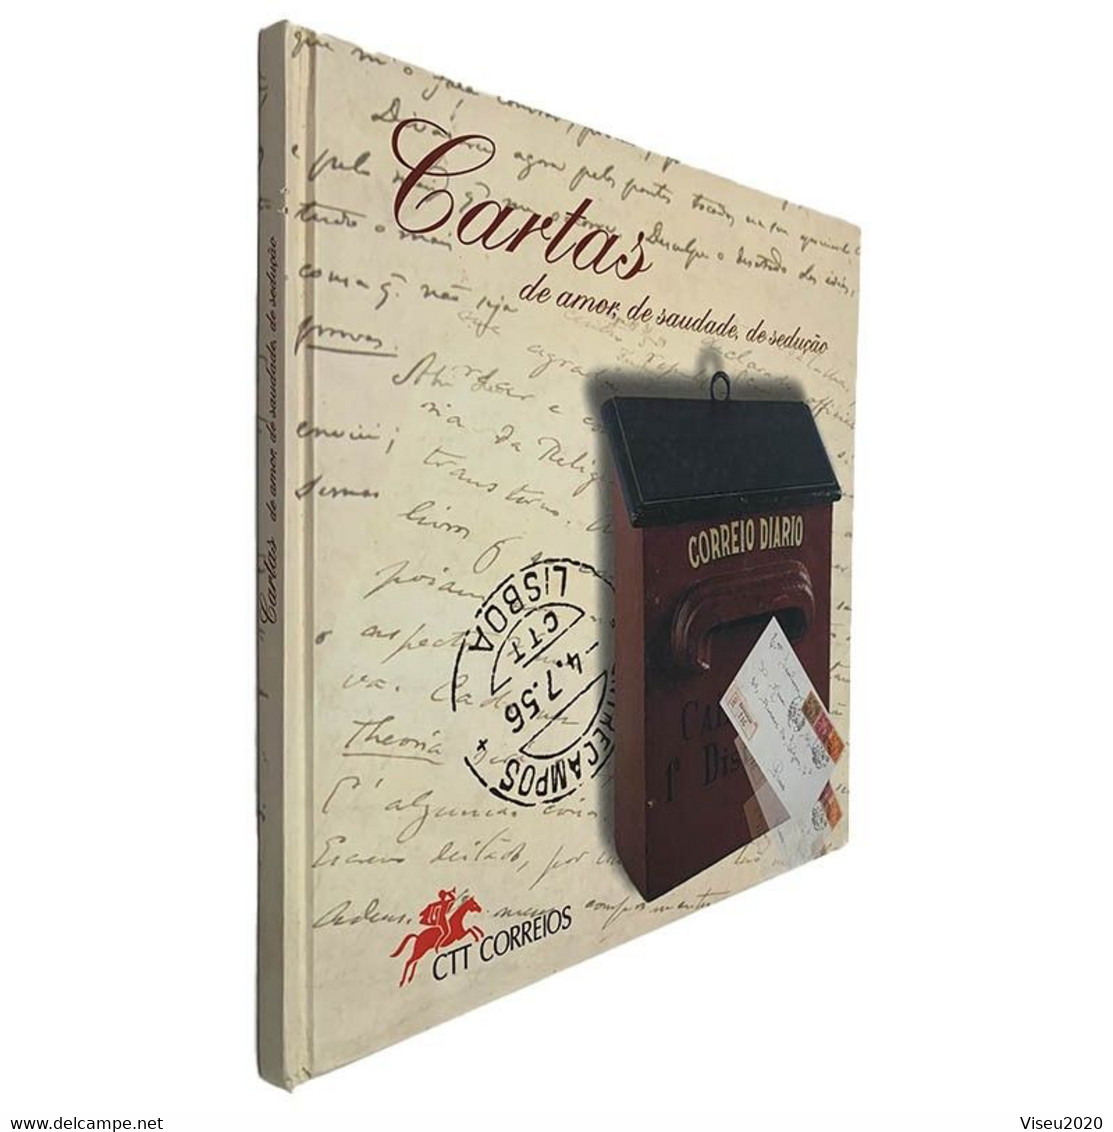 Portugal 1997 Cartas De Amor, De Saudade, De Sedução - LIVRO TEMATICO CTT - Libro Dell'anno